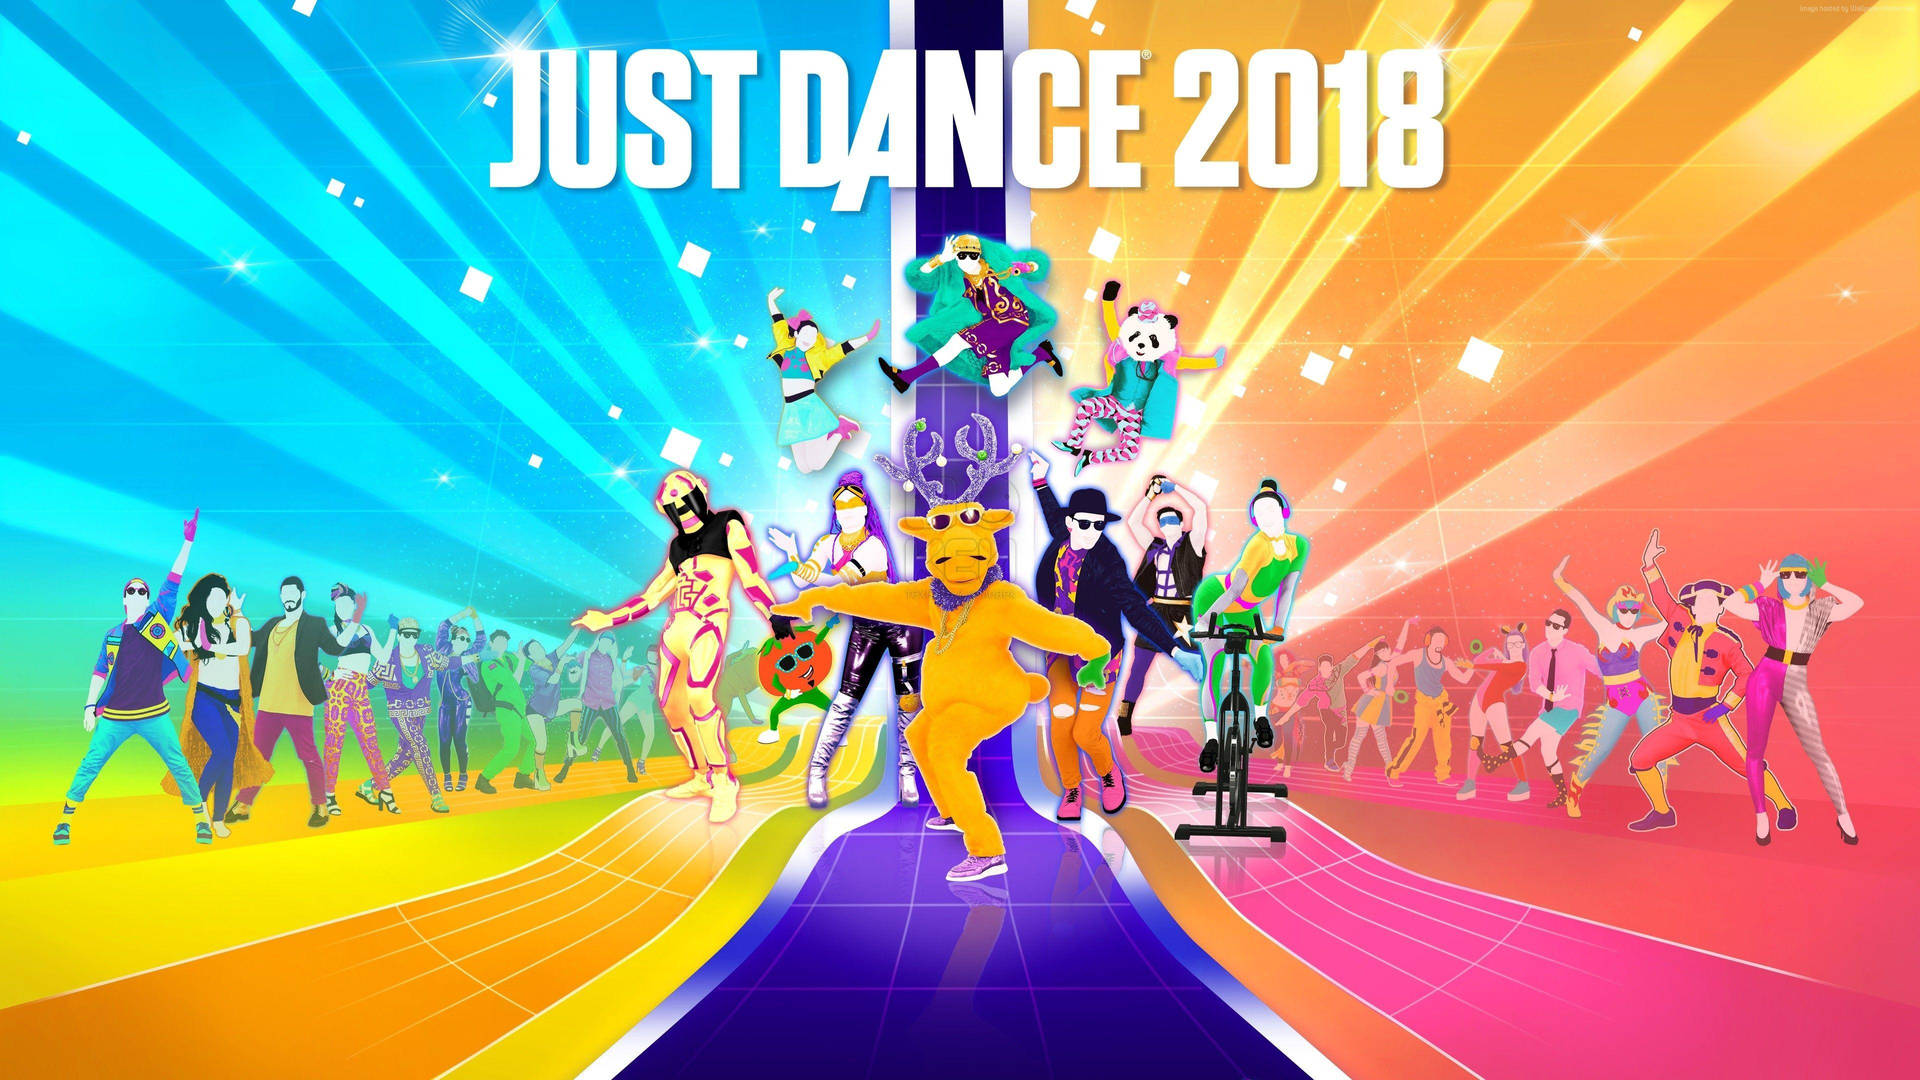 Justdance 2018 Laufsteg-poster Wallpaper